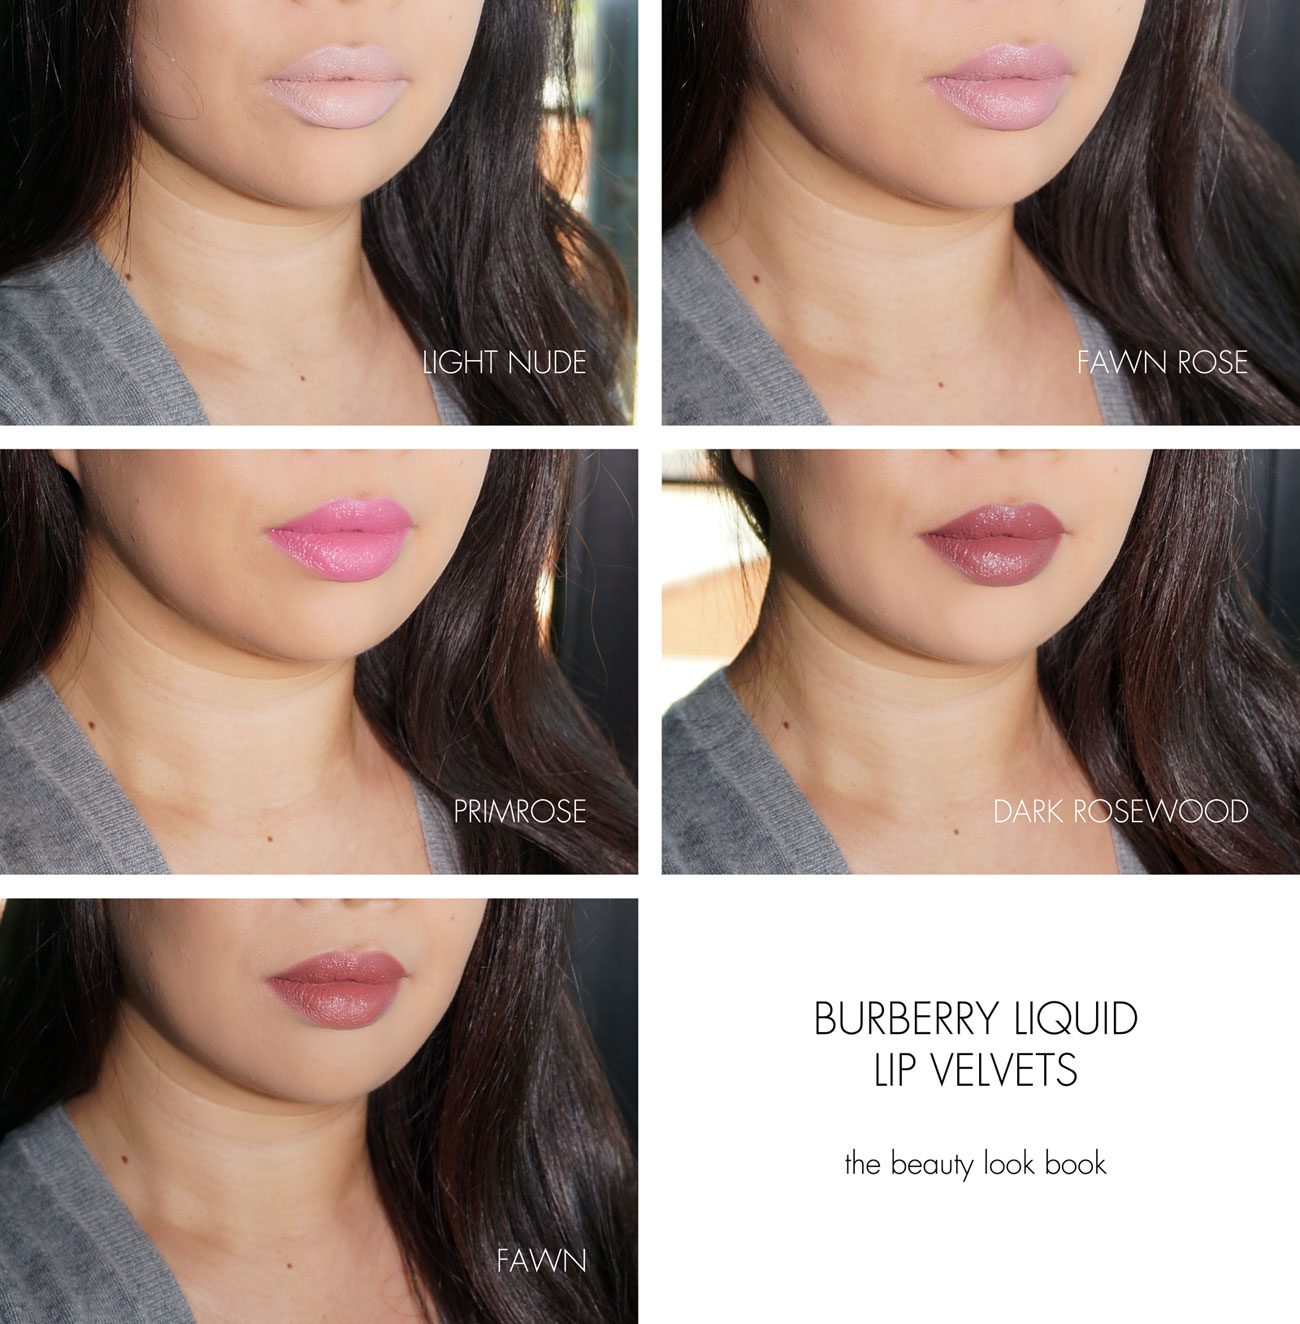 burberry liquid lip velvet review